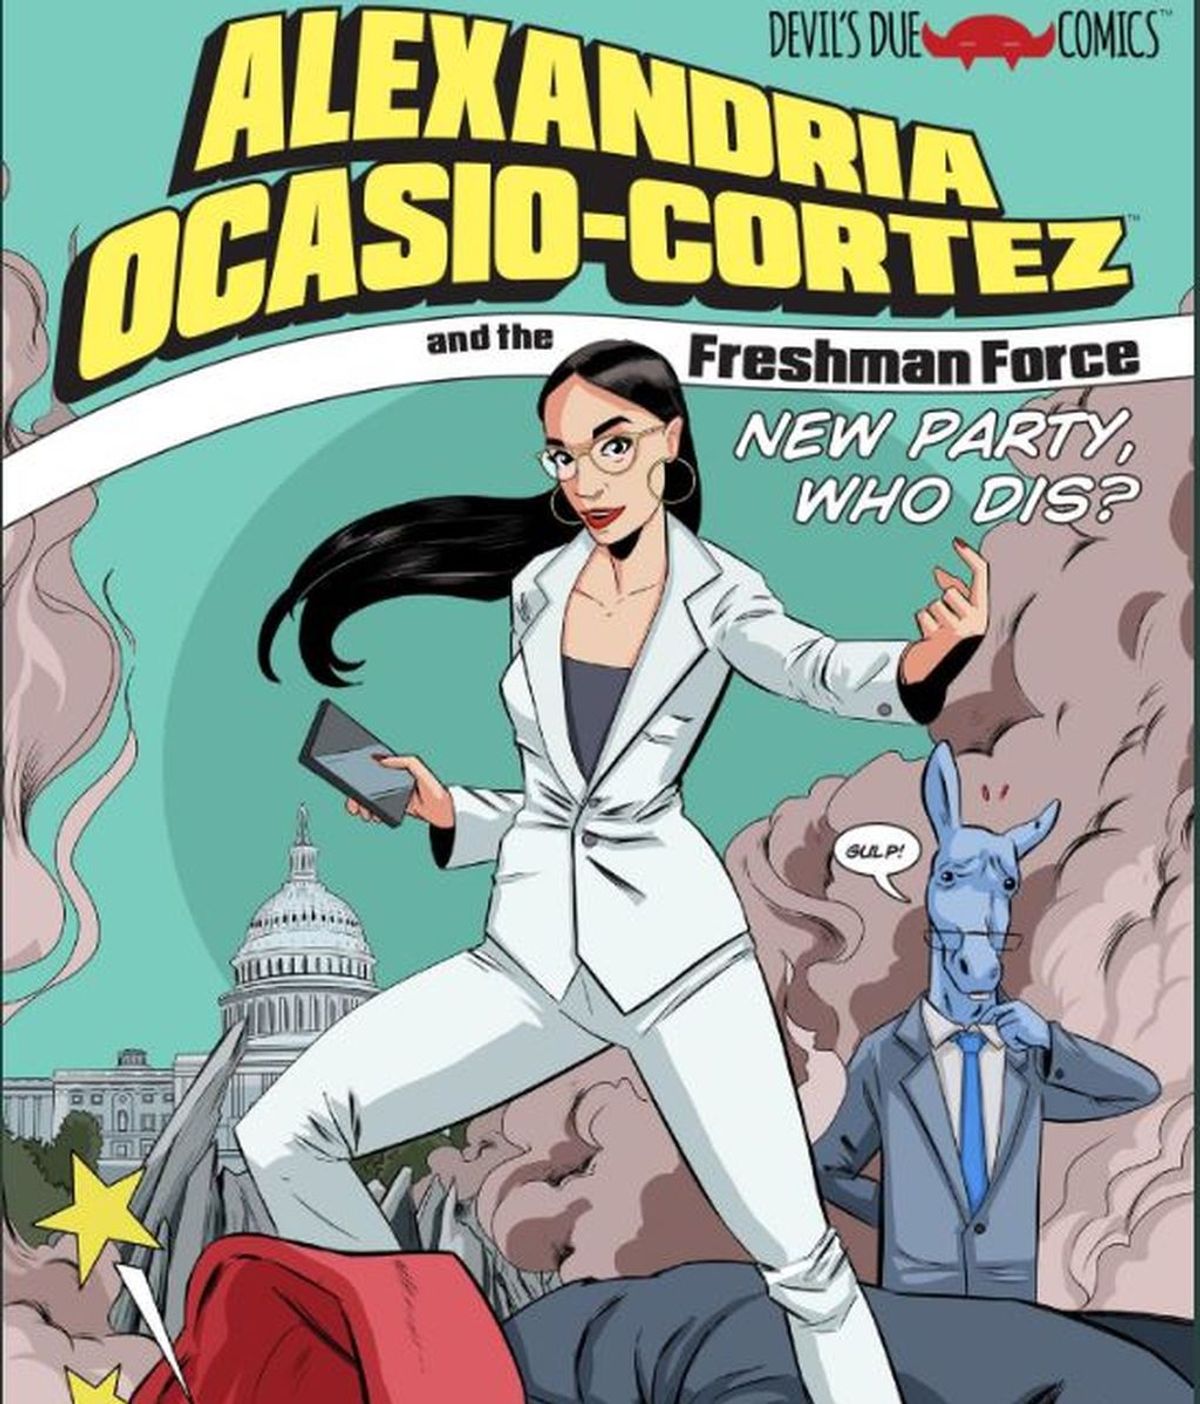 La congresista Ocasio-Cortez, superheroína en un cómic inspirado en ella